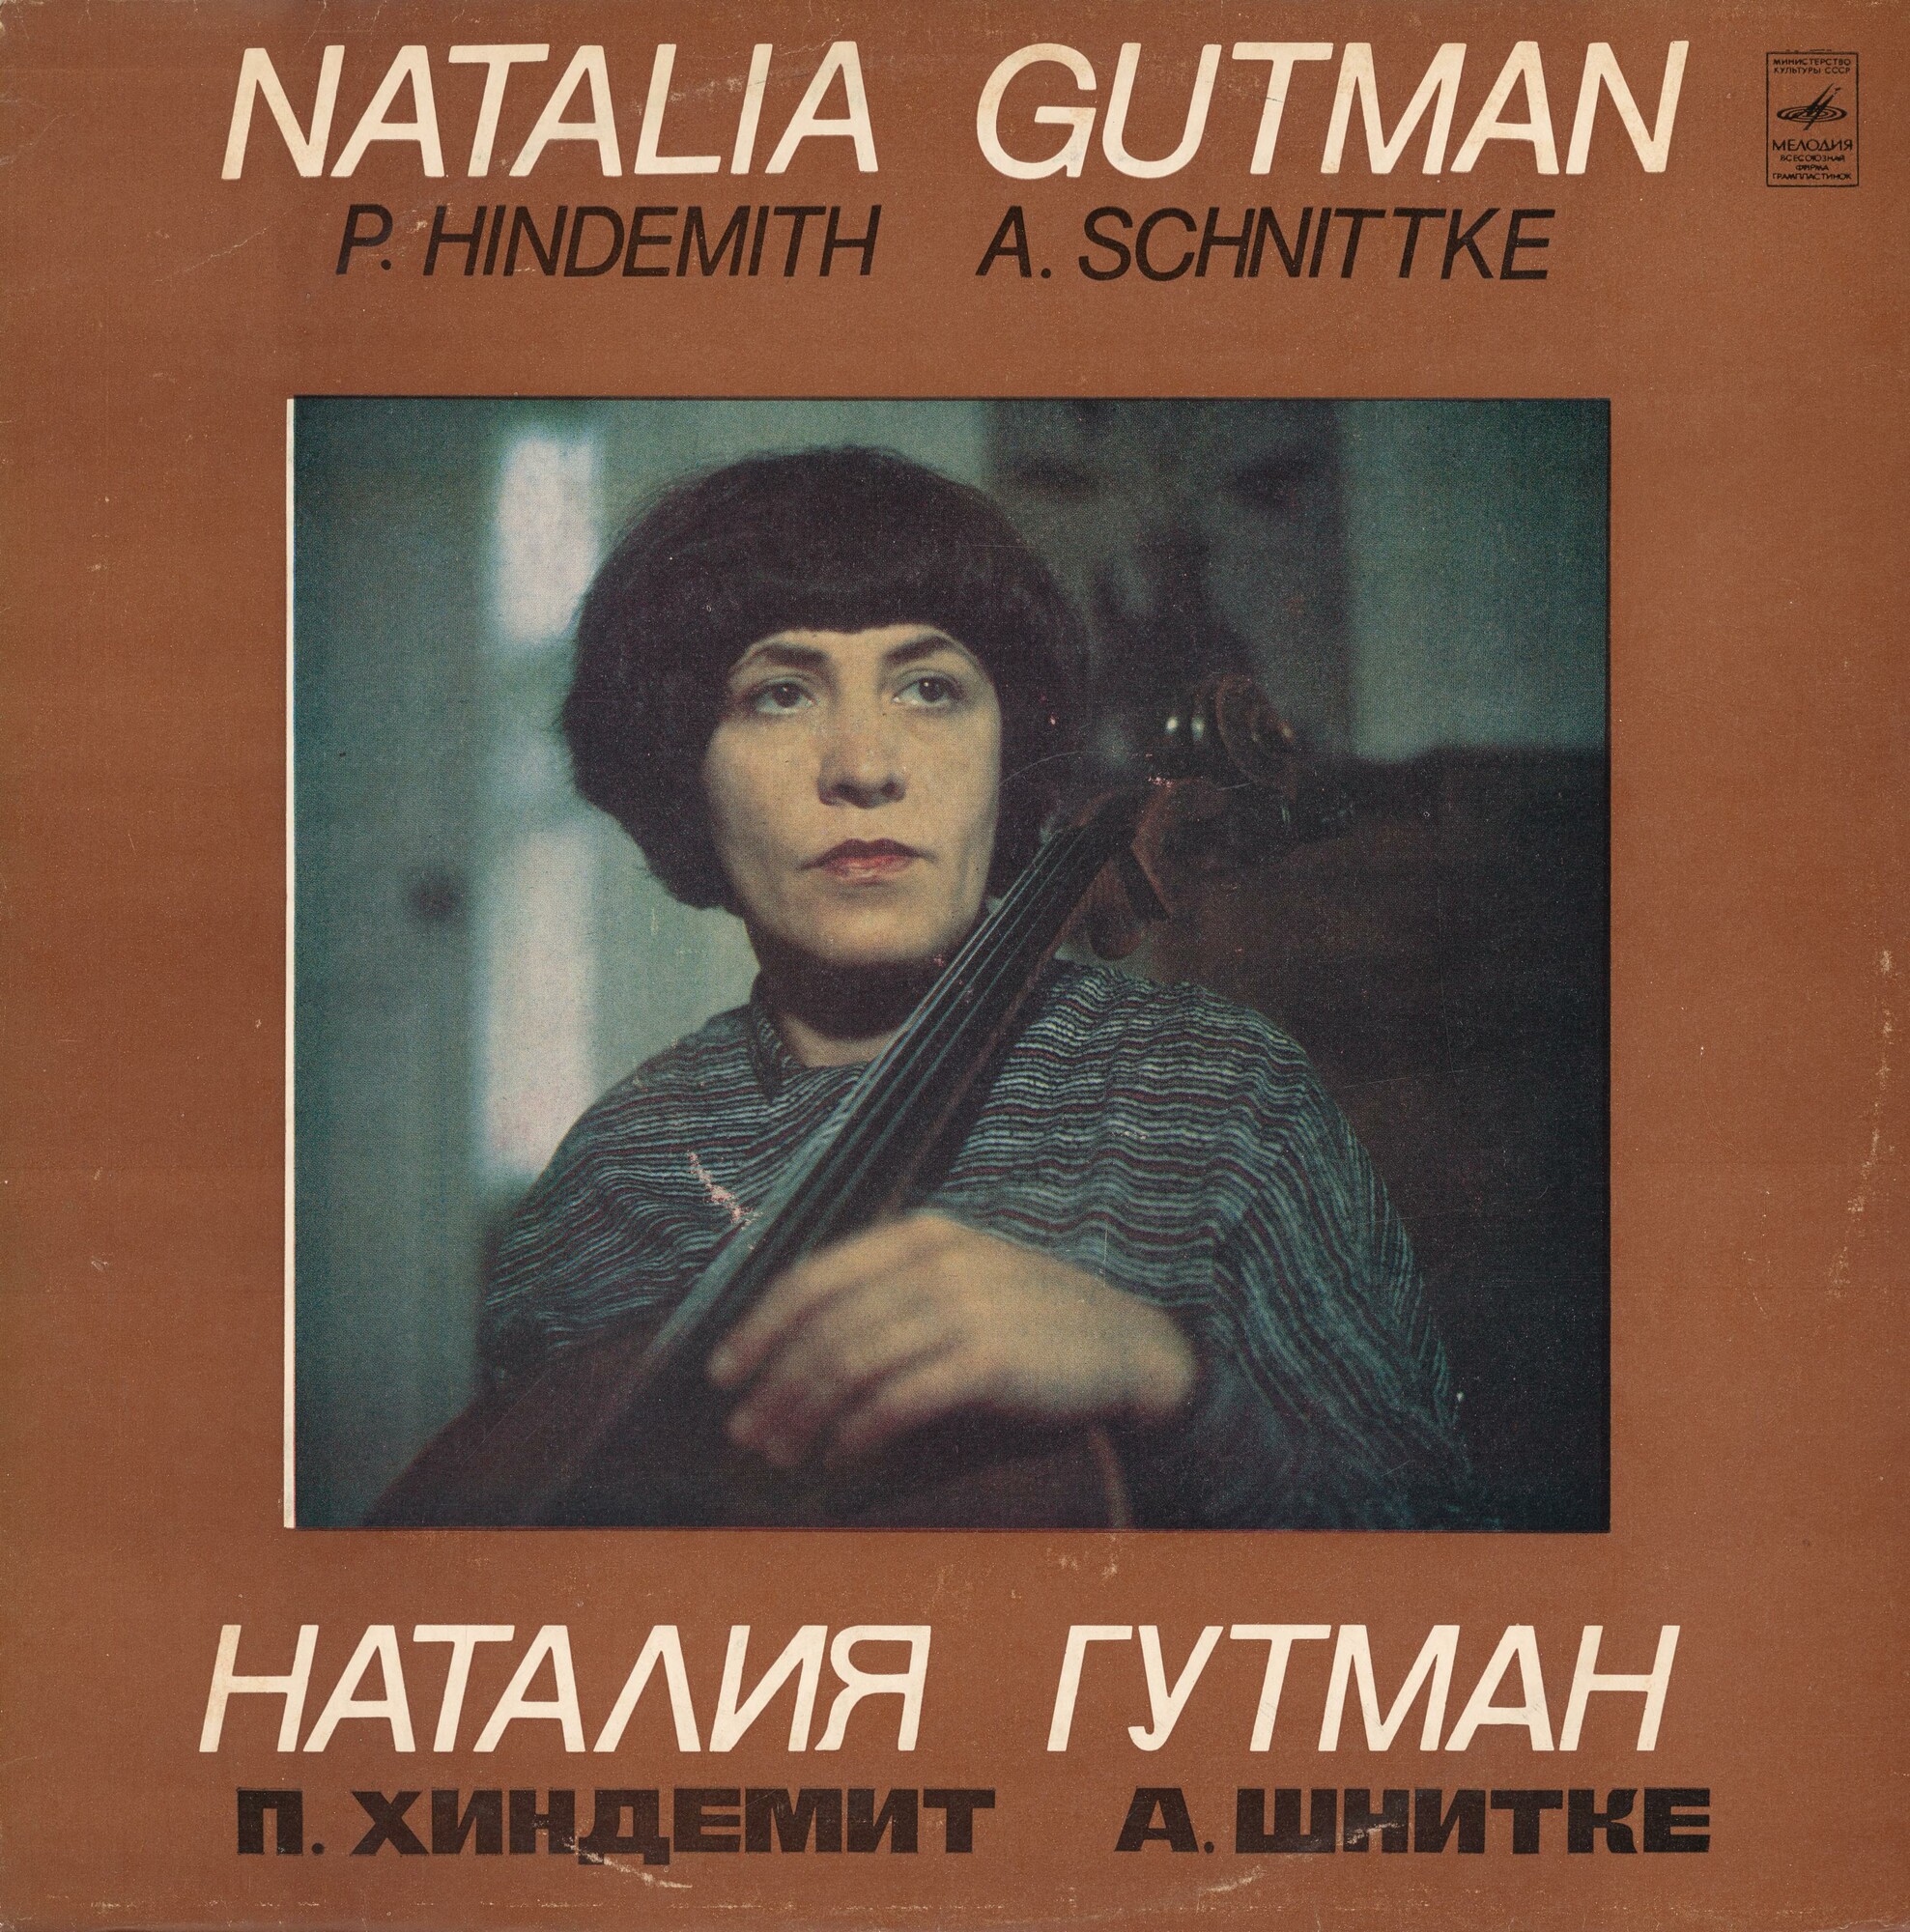 Наталия ГУТМАН (виолончель)